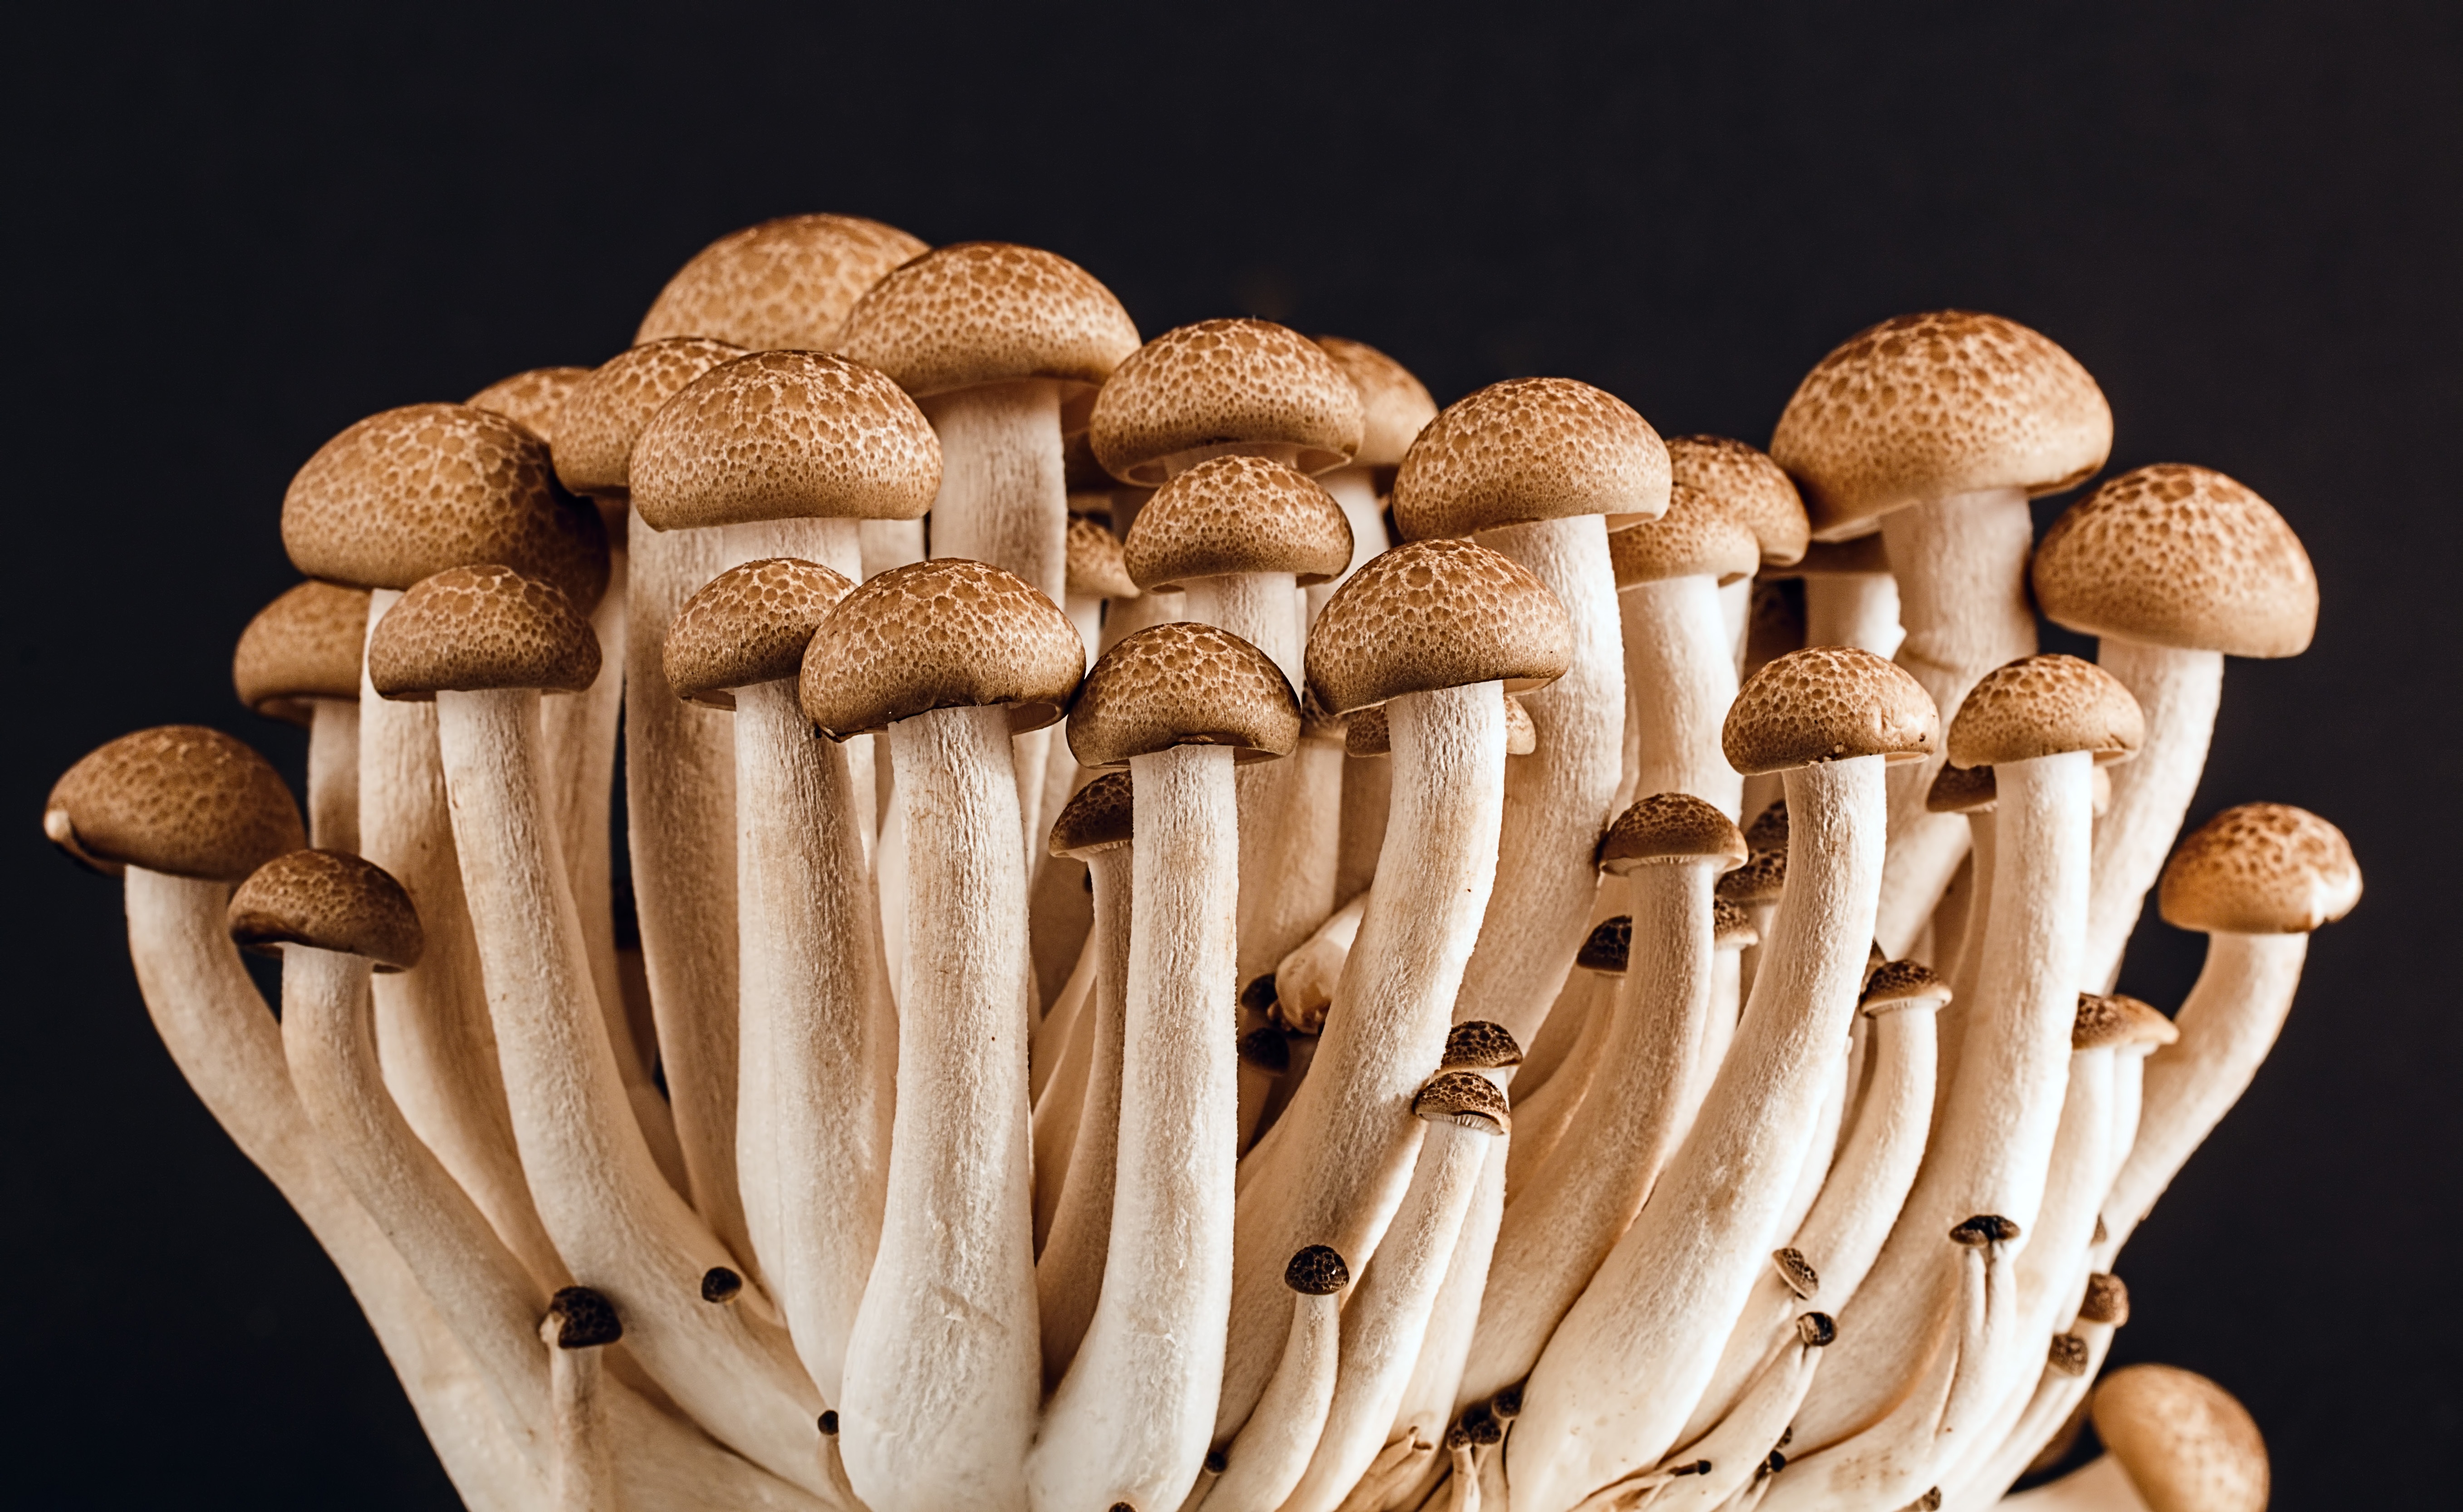 Wood mushroom free image